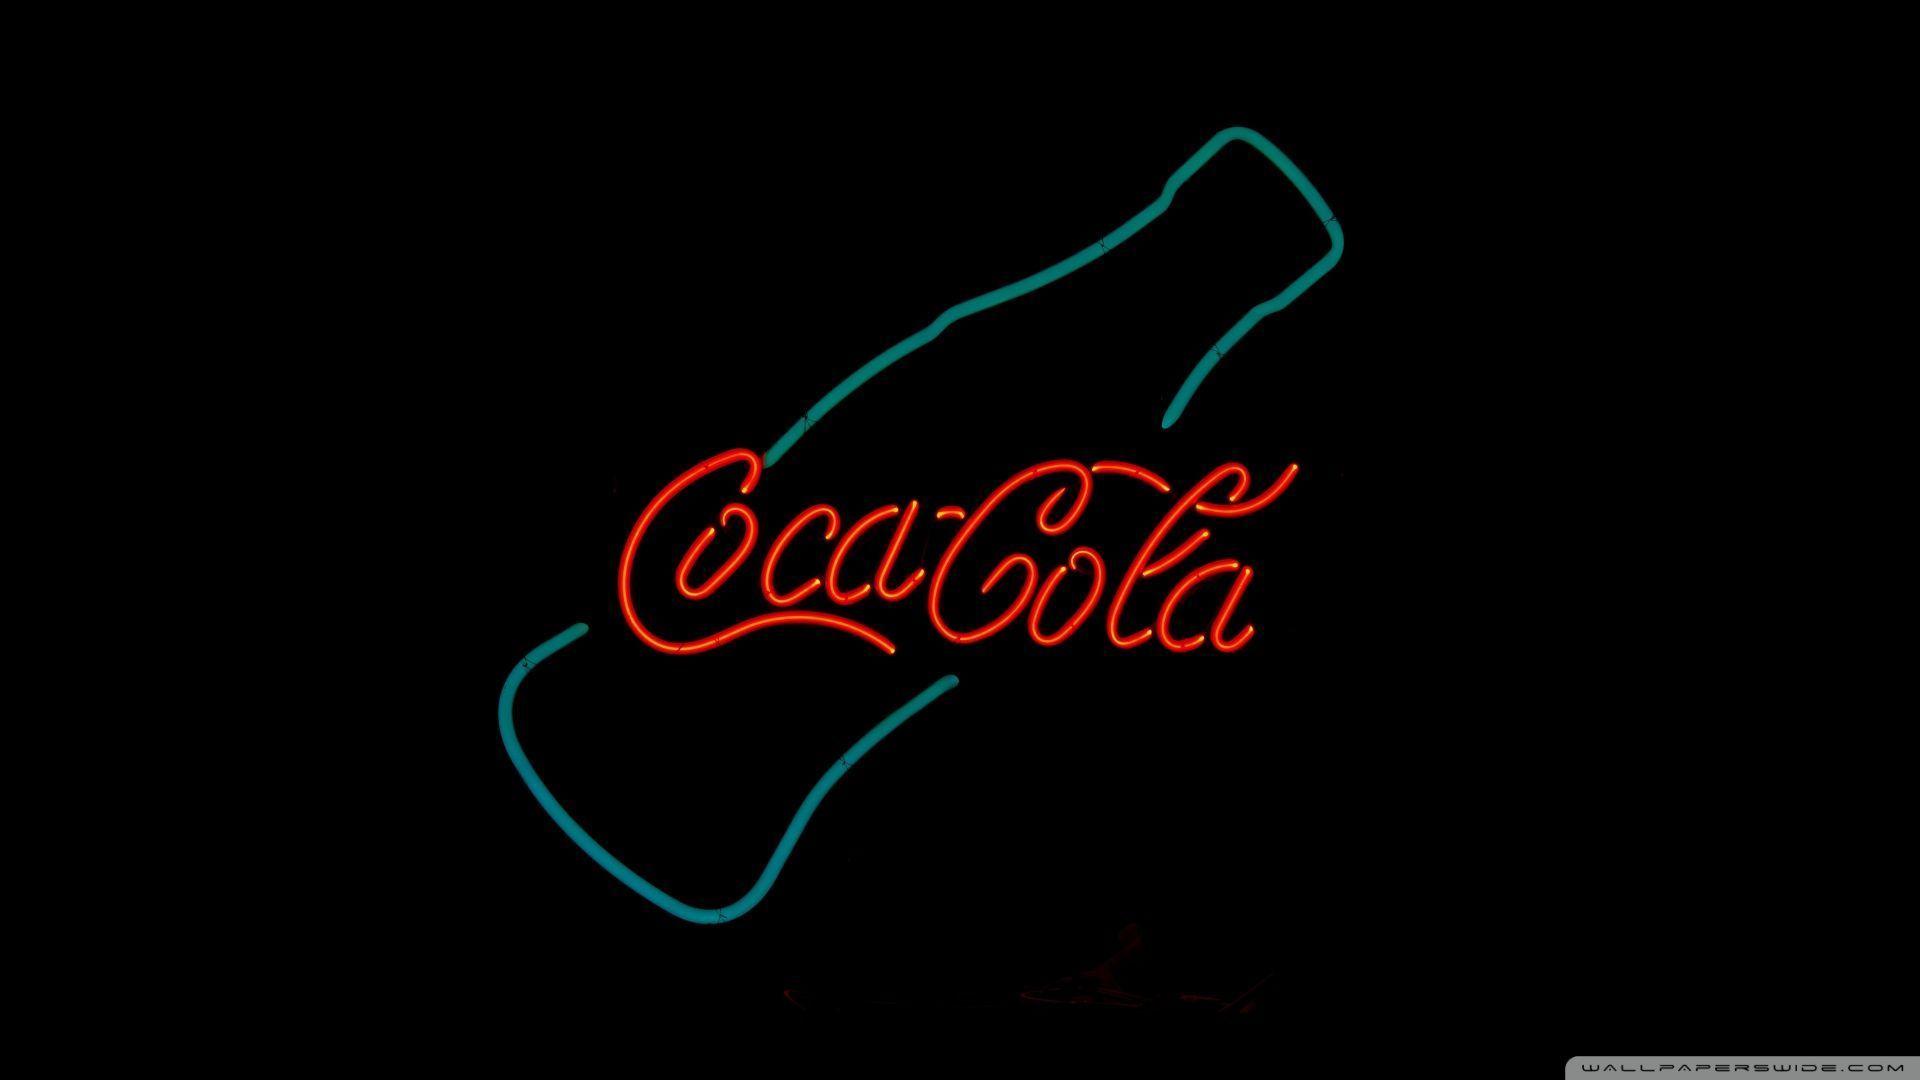 coke bottle HD wallpaper. download all free jpeg